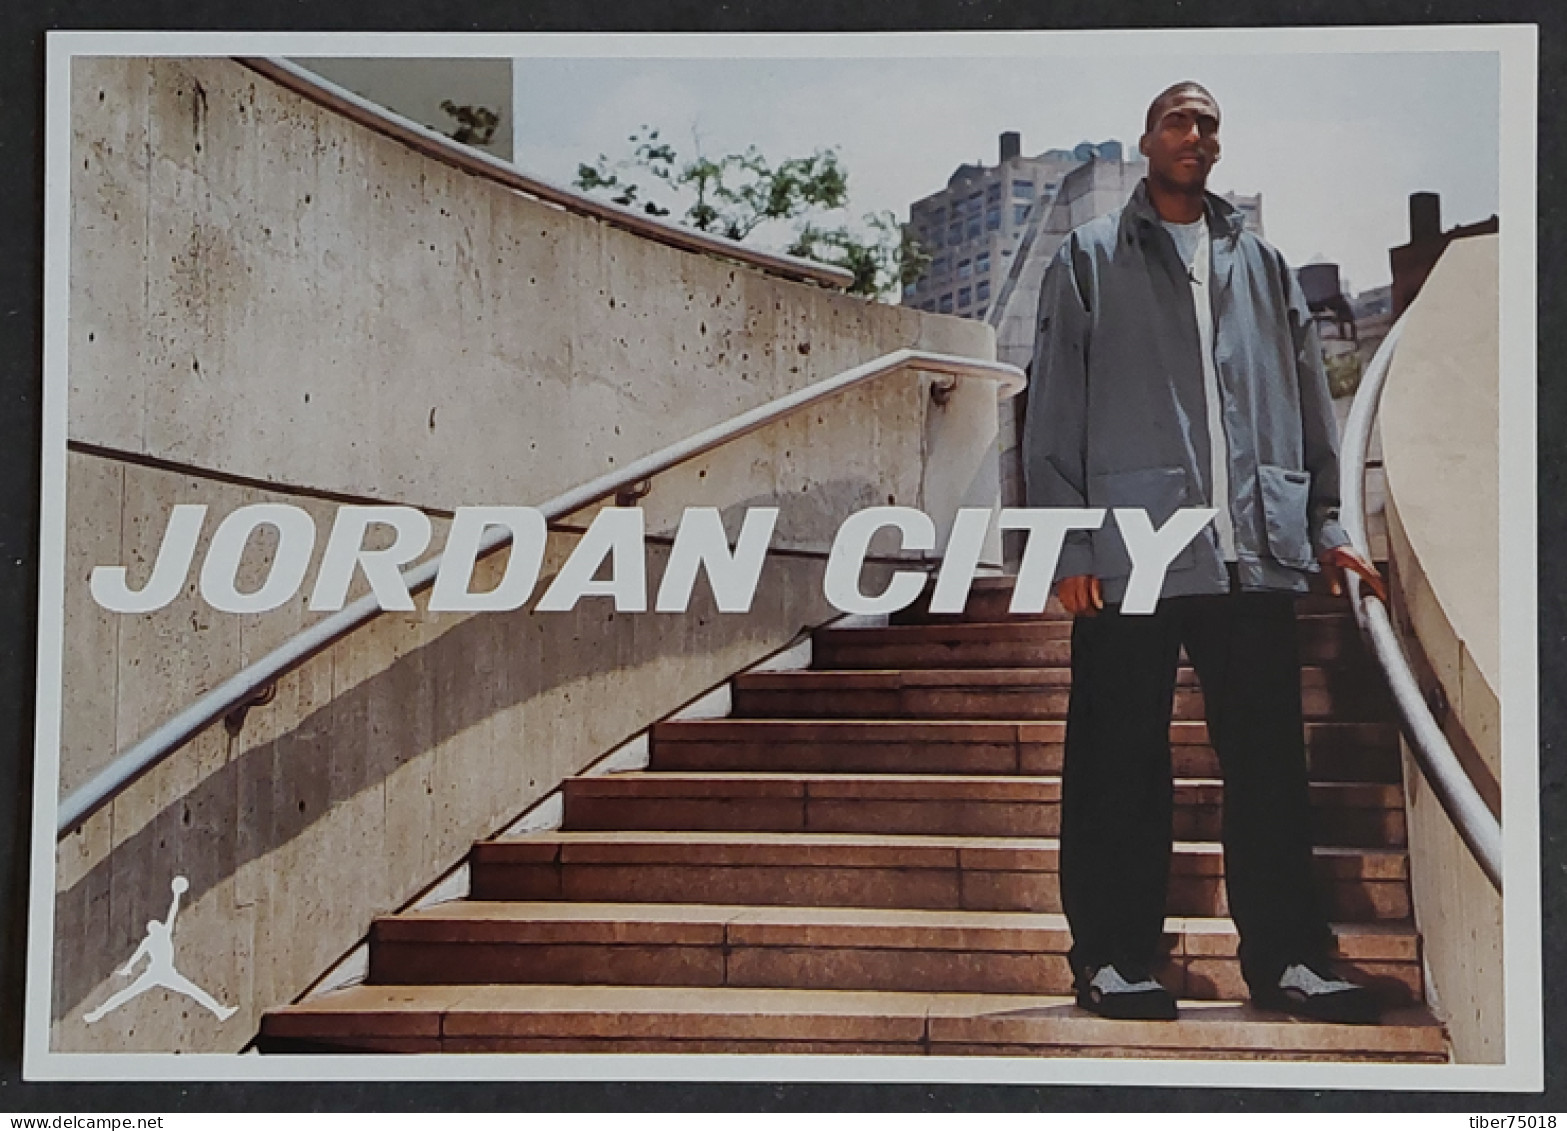 Carte Postale - Jordan City - Eddie Jones (basket-ball) Wears The 3-on-1 Fast Break Jacket - Publicidad